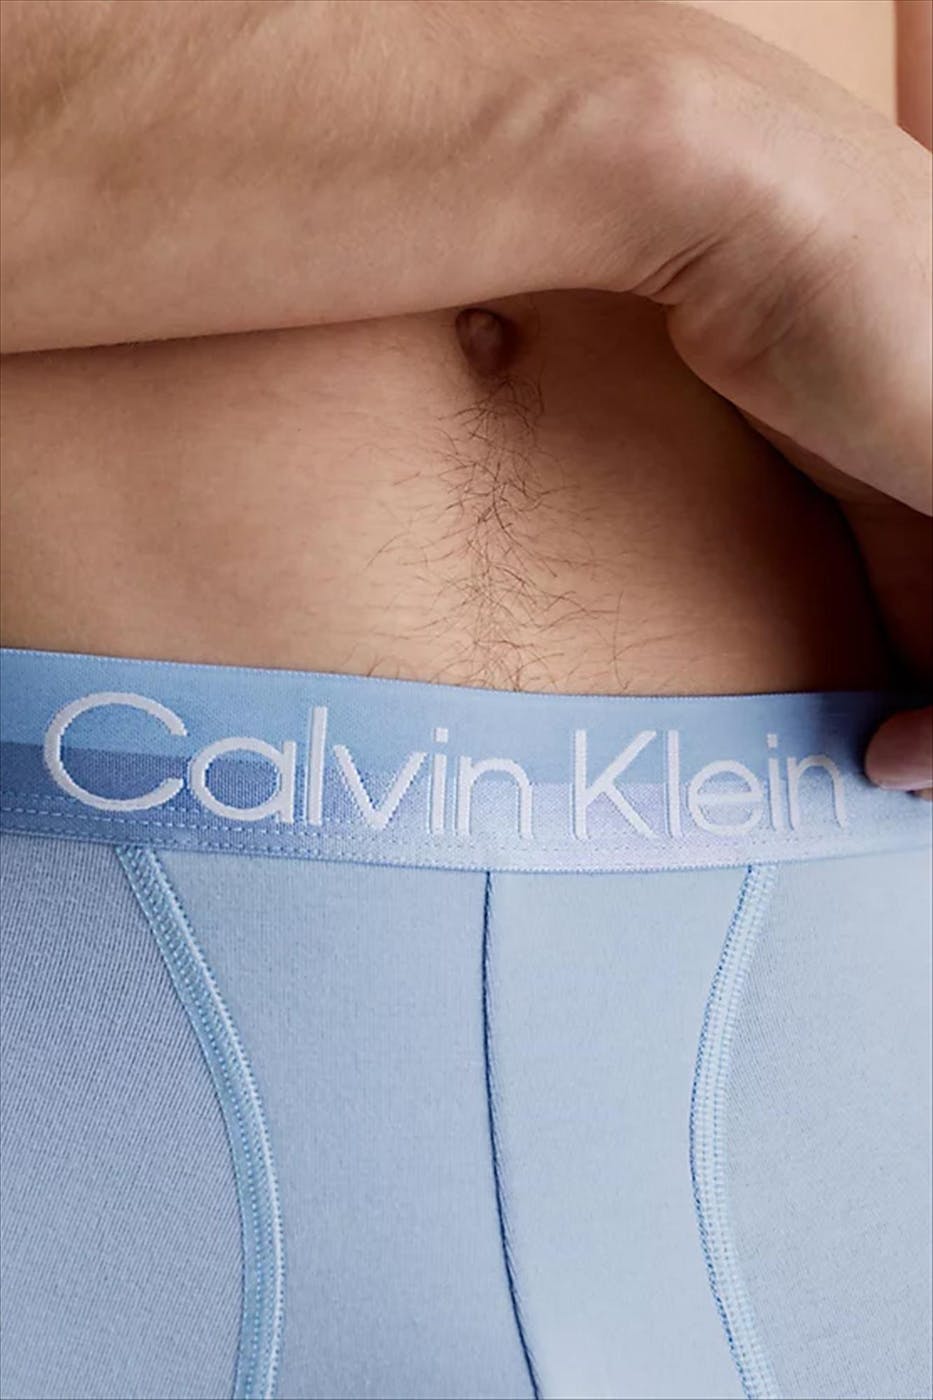 Calvin Klein Underwear - Grijs-Blauw-Zwarte Modern 3-pack boxershorts